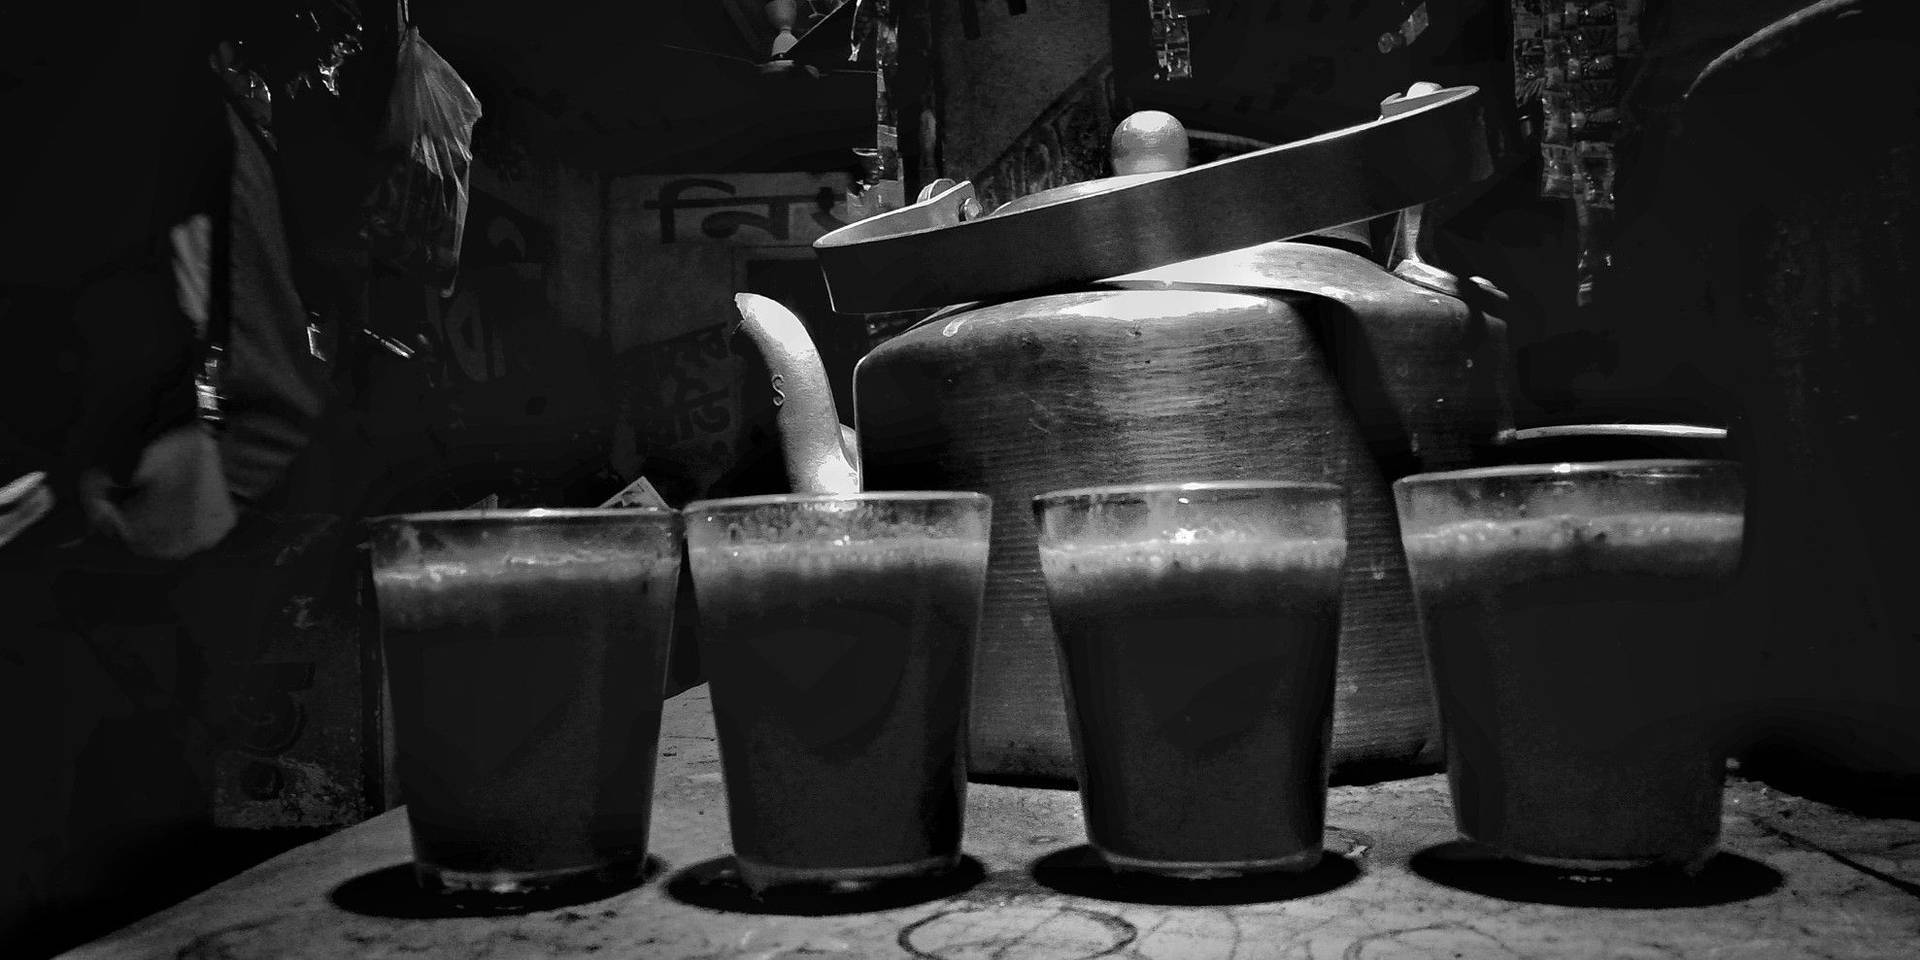 Kolkatakettle Drink Não Faz Sentido Em Termos De Papel De Parede Para Computador Ou Celular. Você Poderia Me Fornecer Mais Informações Sobre O Que Deseja Traduzir? Papel de Parede